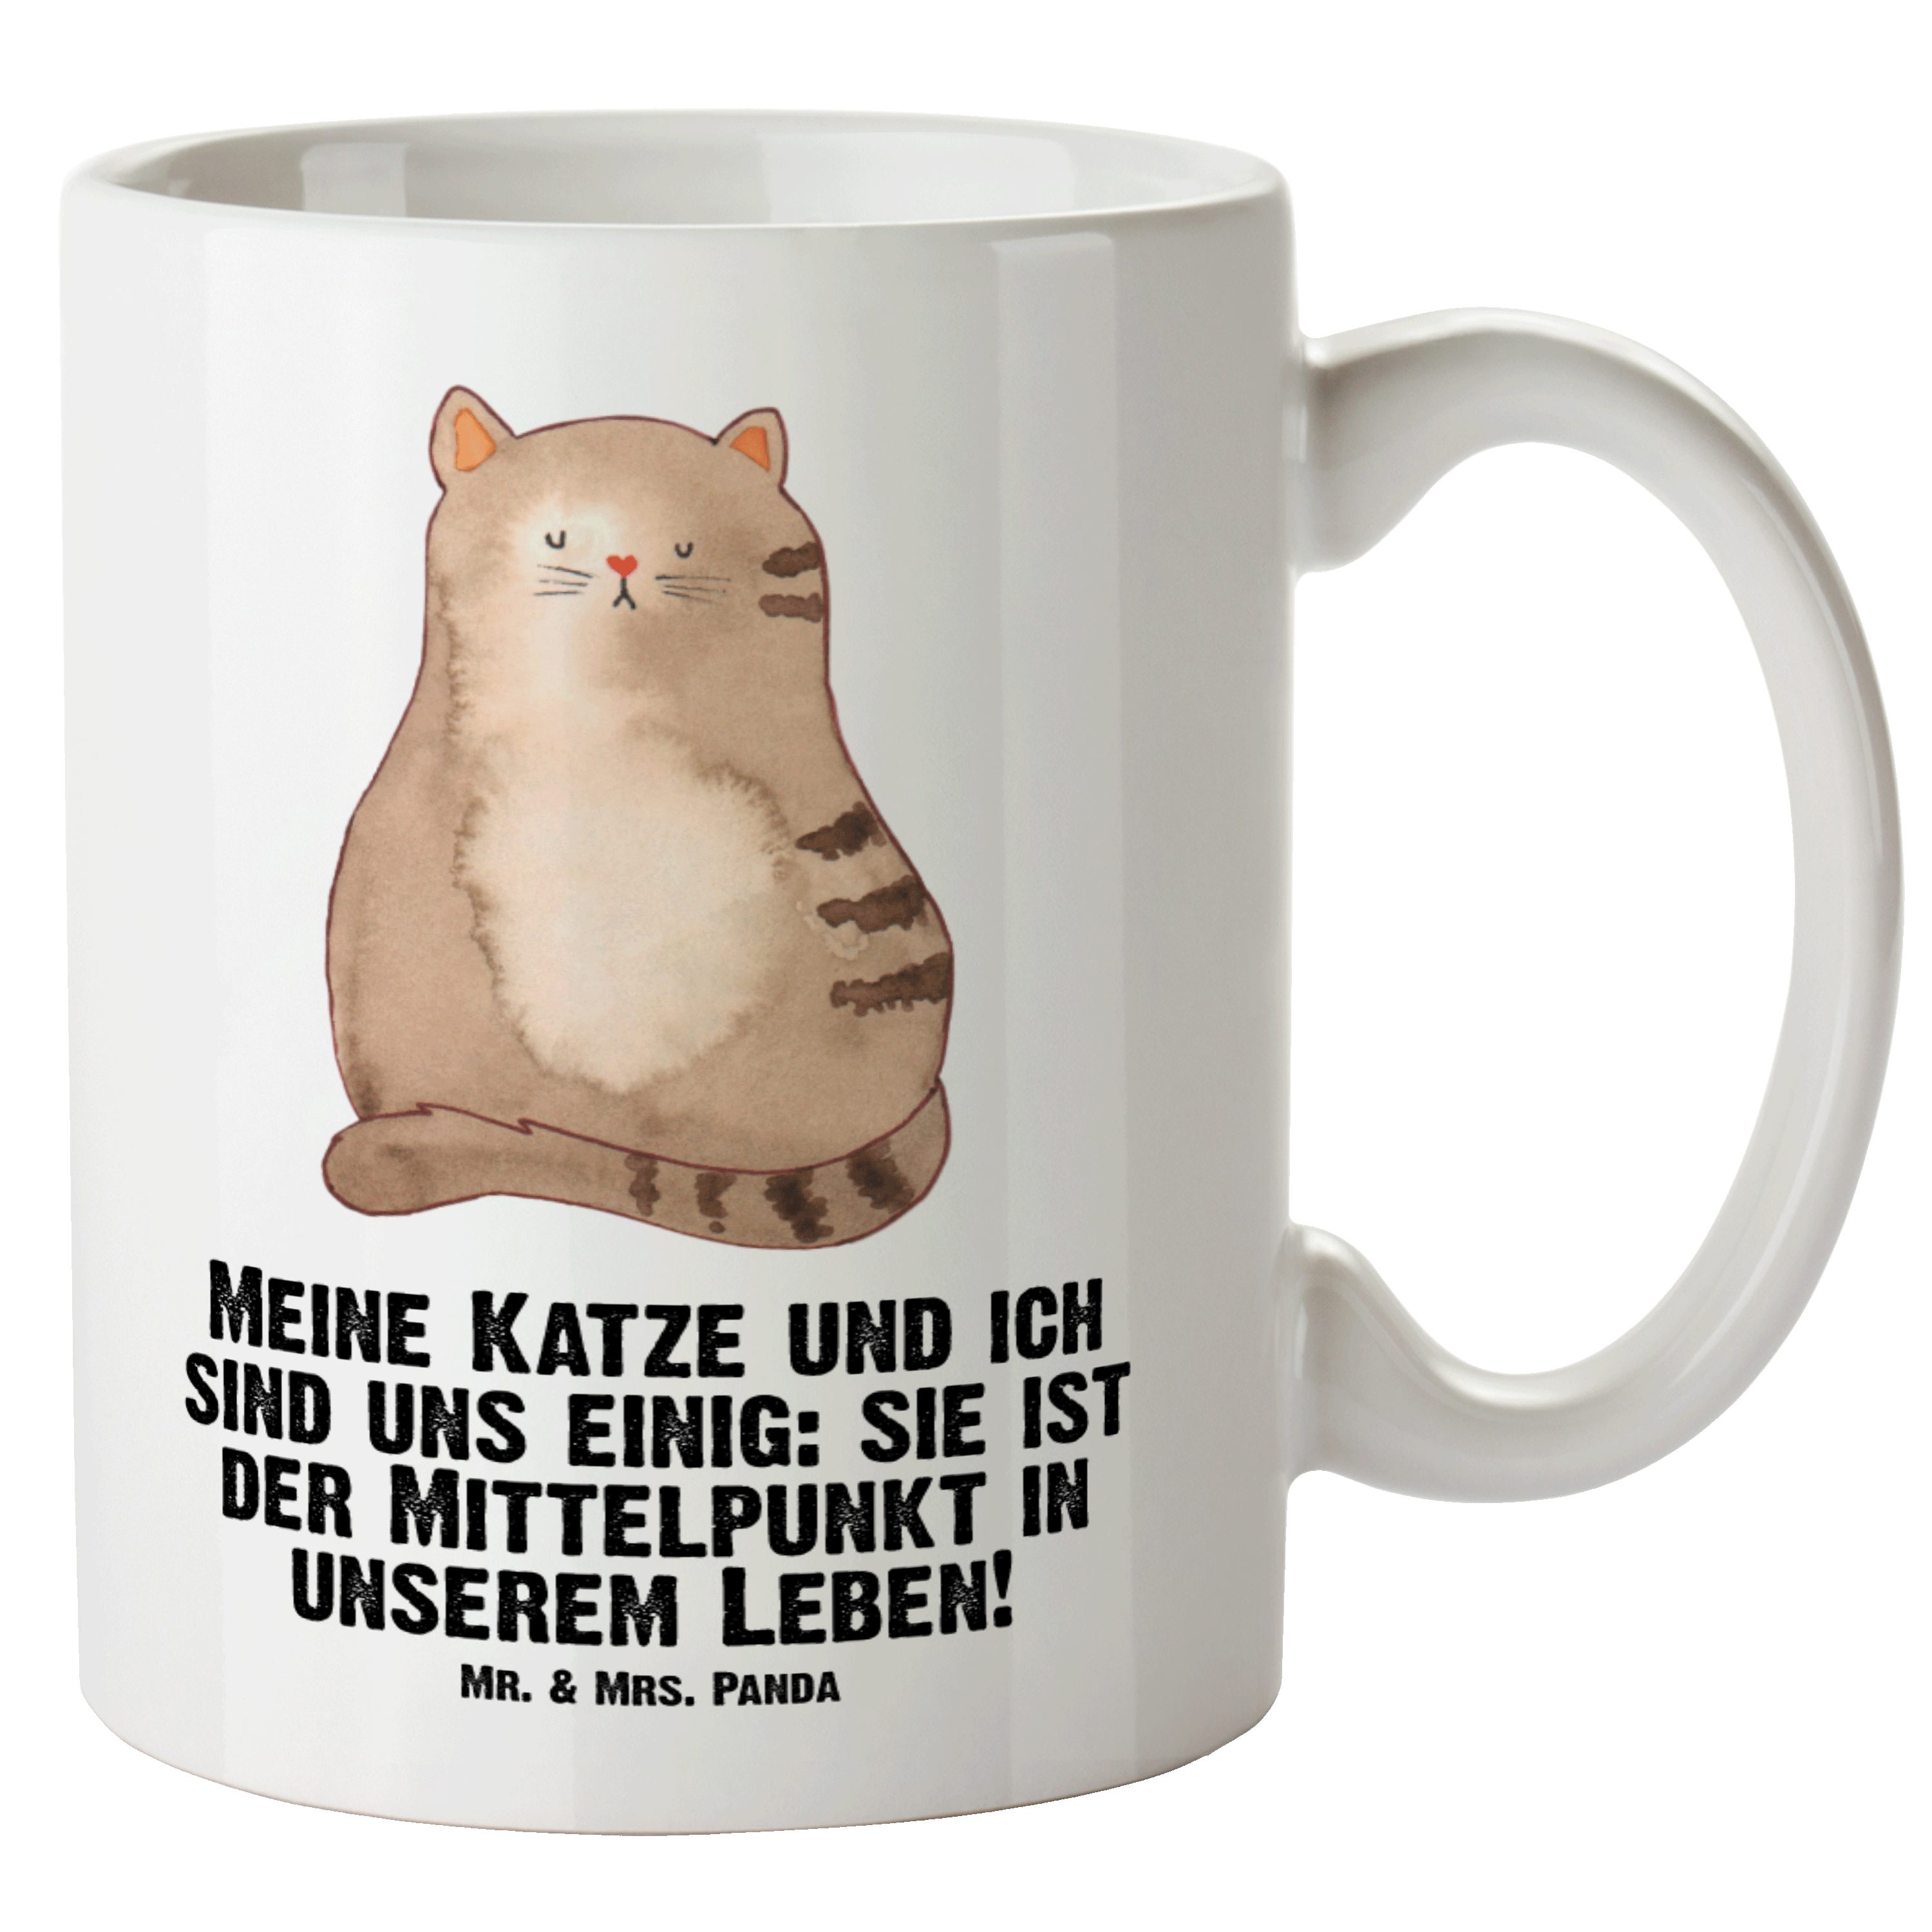 Mr. & Mrs. Panda Tasse Katze sitzend - Weiß - Geschenk, XL Tasse, Große Tasse, Jumbo Tasse, XL Tasse Keramik